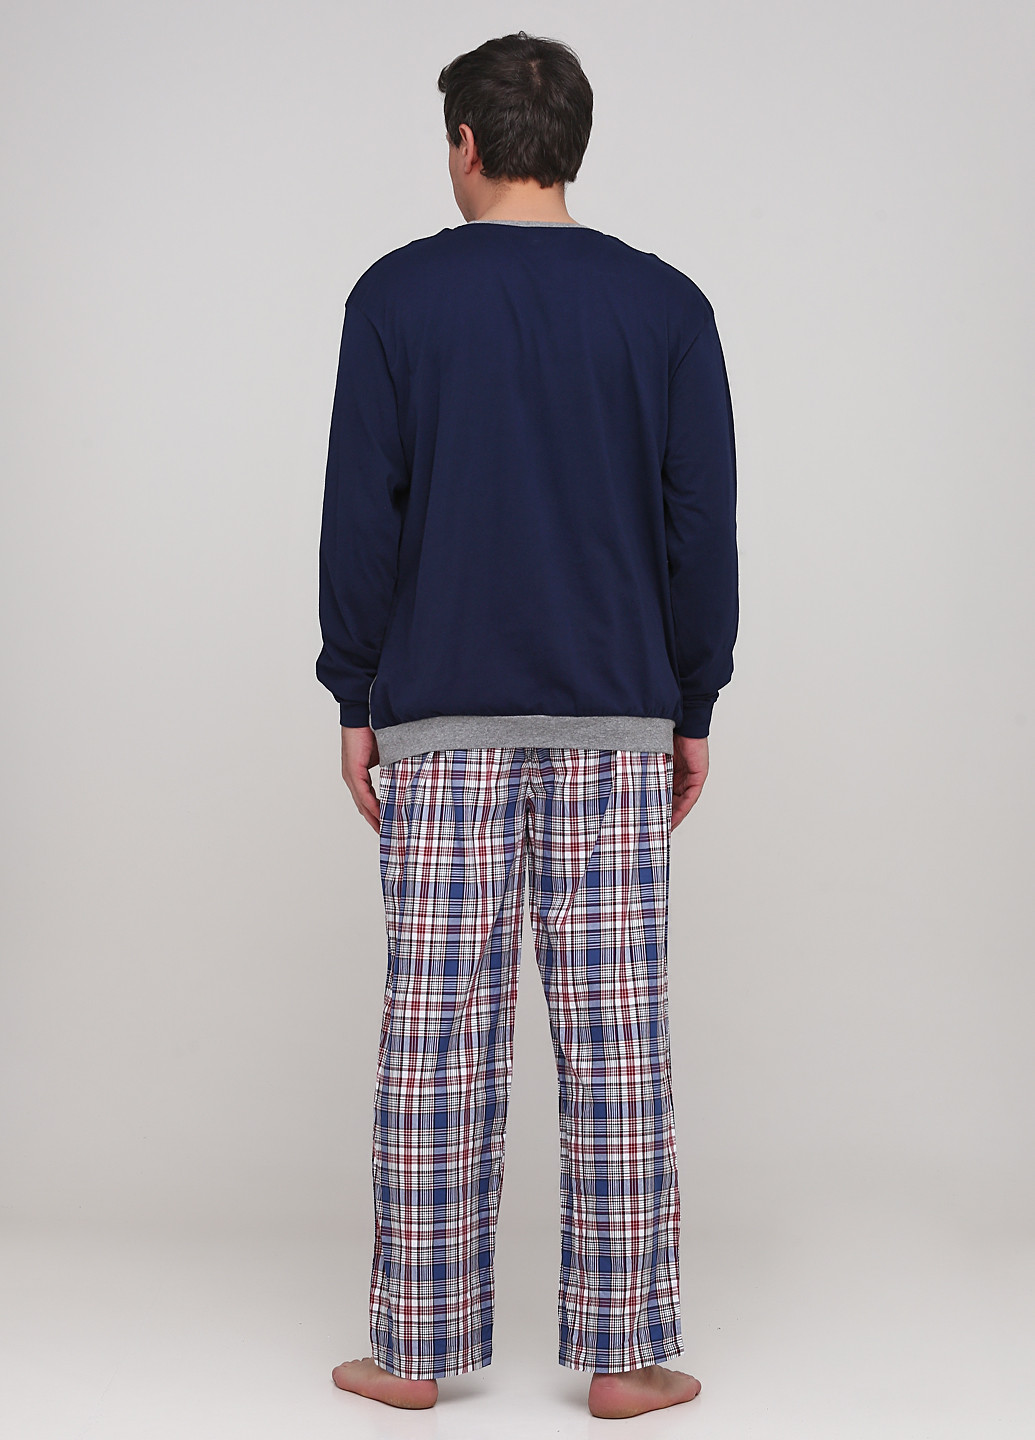 Пижама (свитшот, брюки) C&A свитшот + брюки клетка комбинированная домашняя трикотаж, хлопок